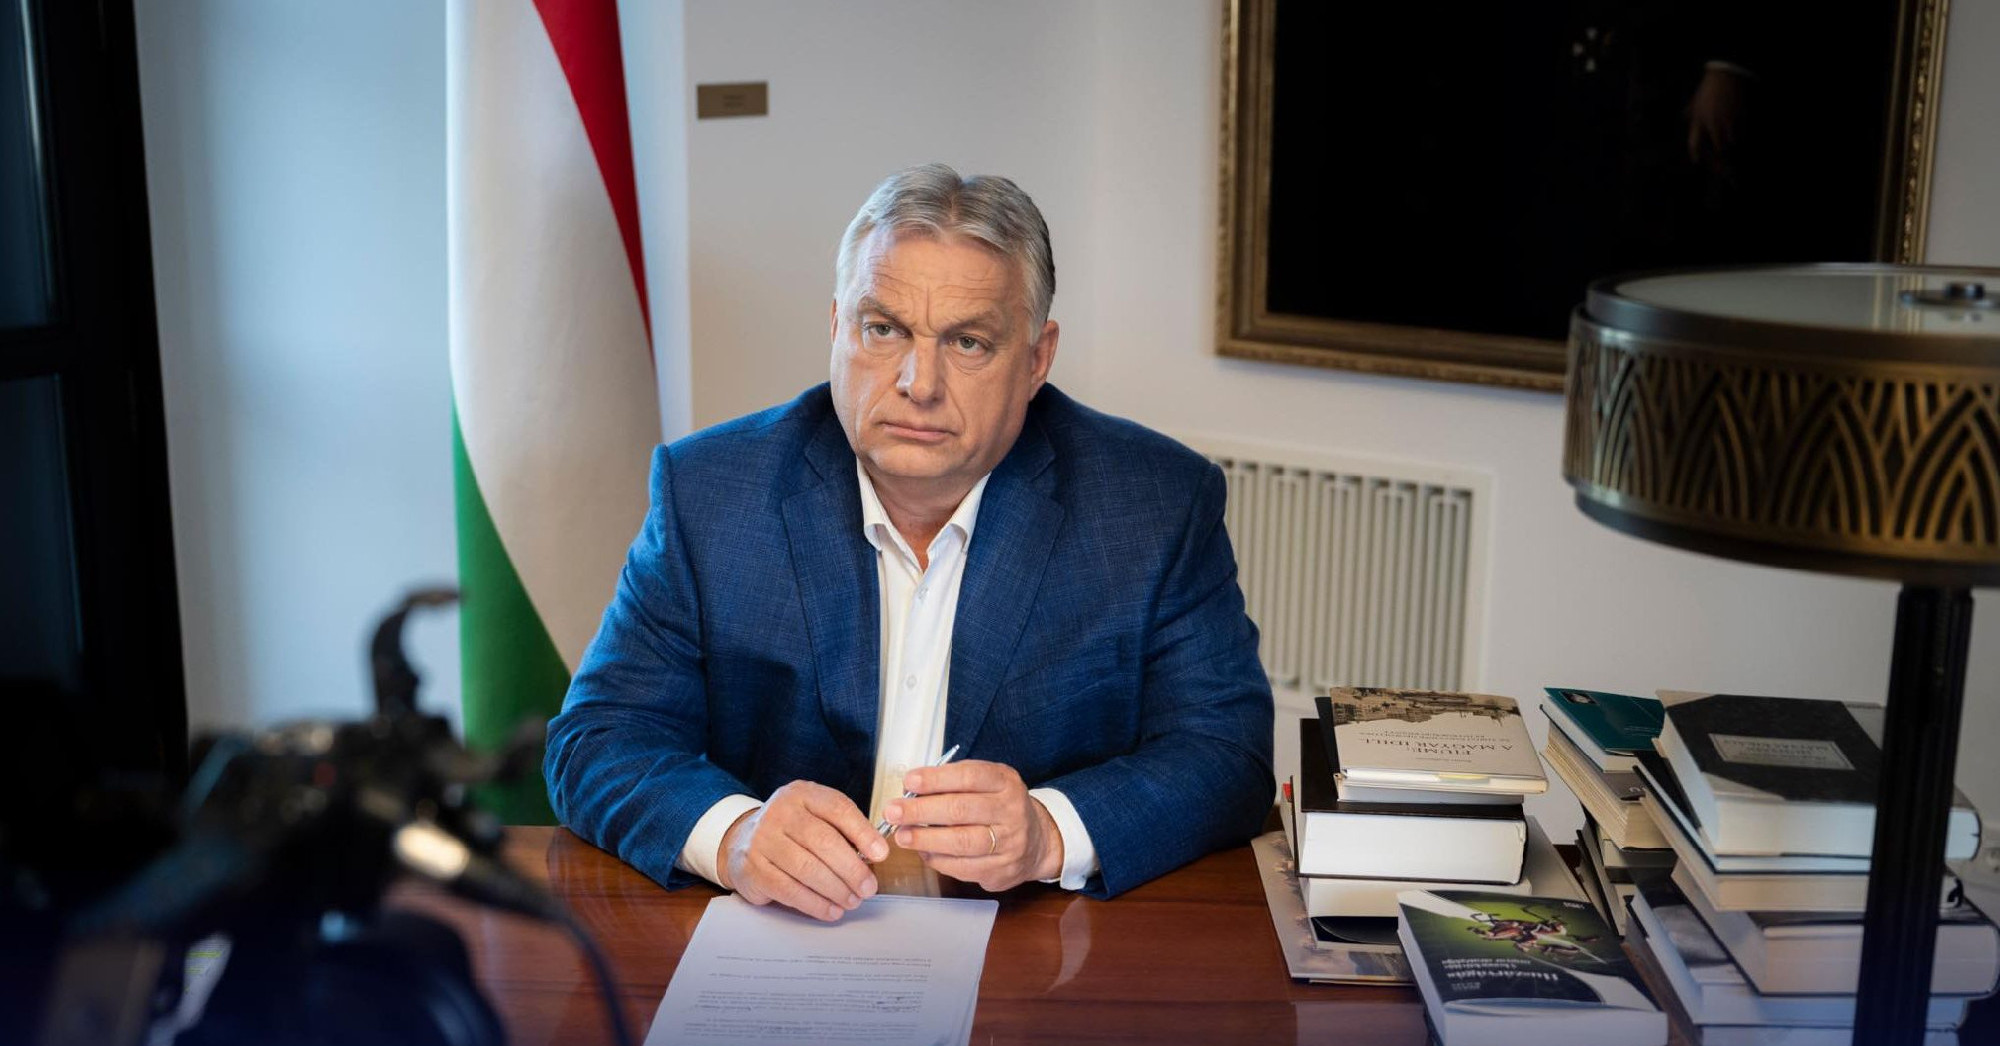 Véget ért a Védelmi Tanács ülése: Orbán Viktor hamarosan bejelentést tesz